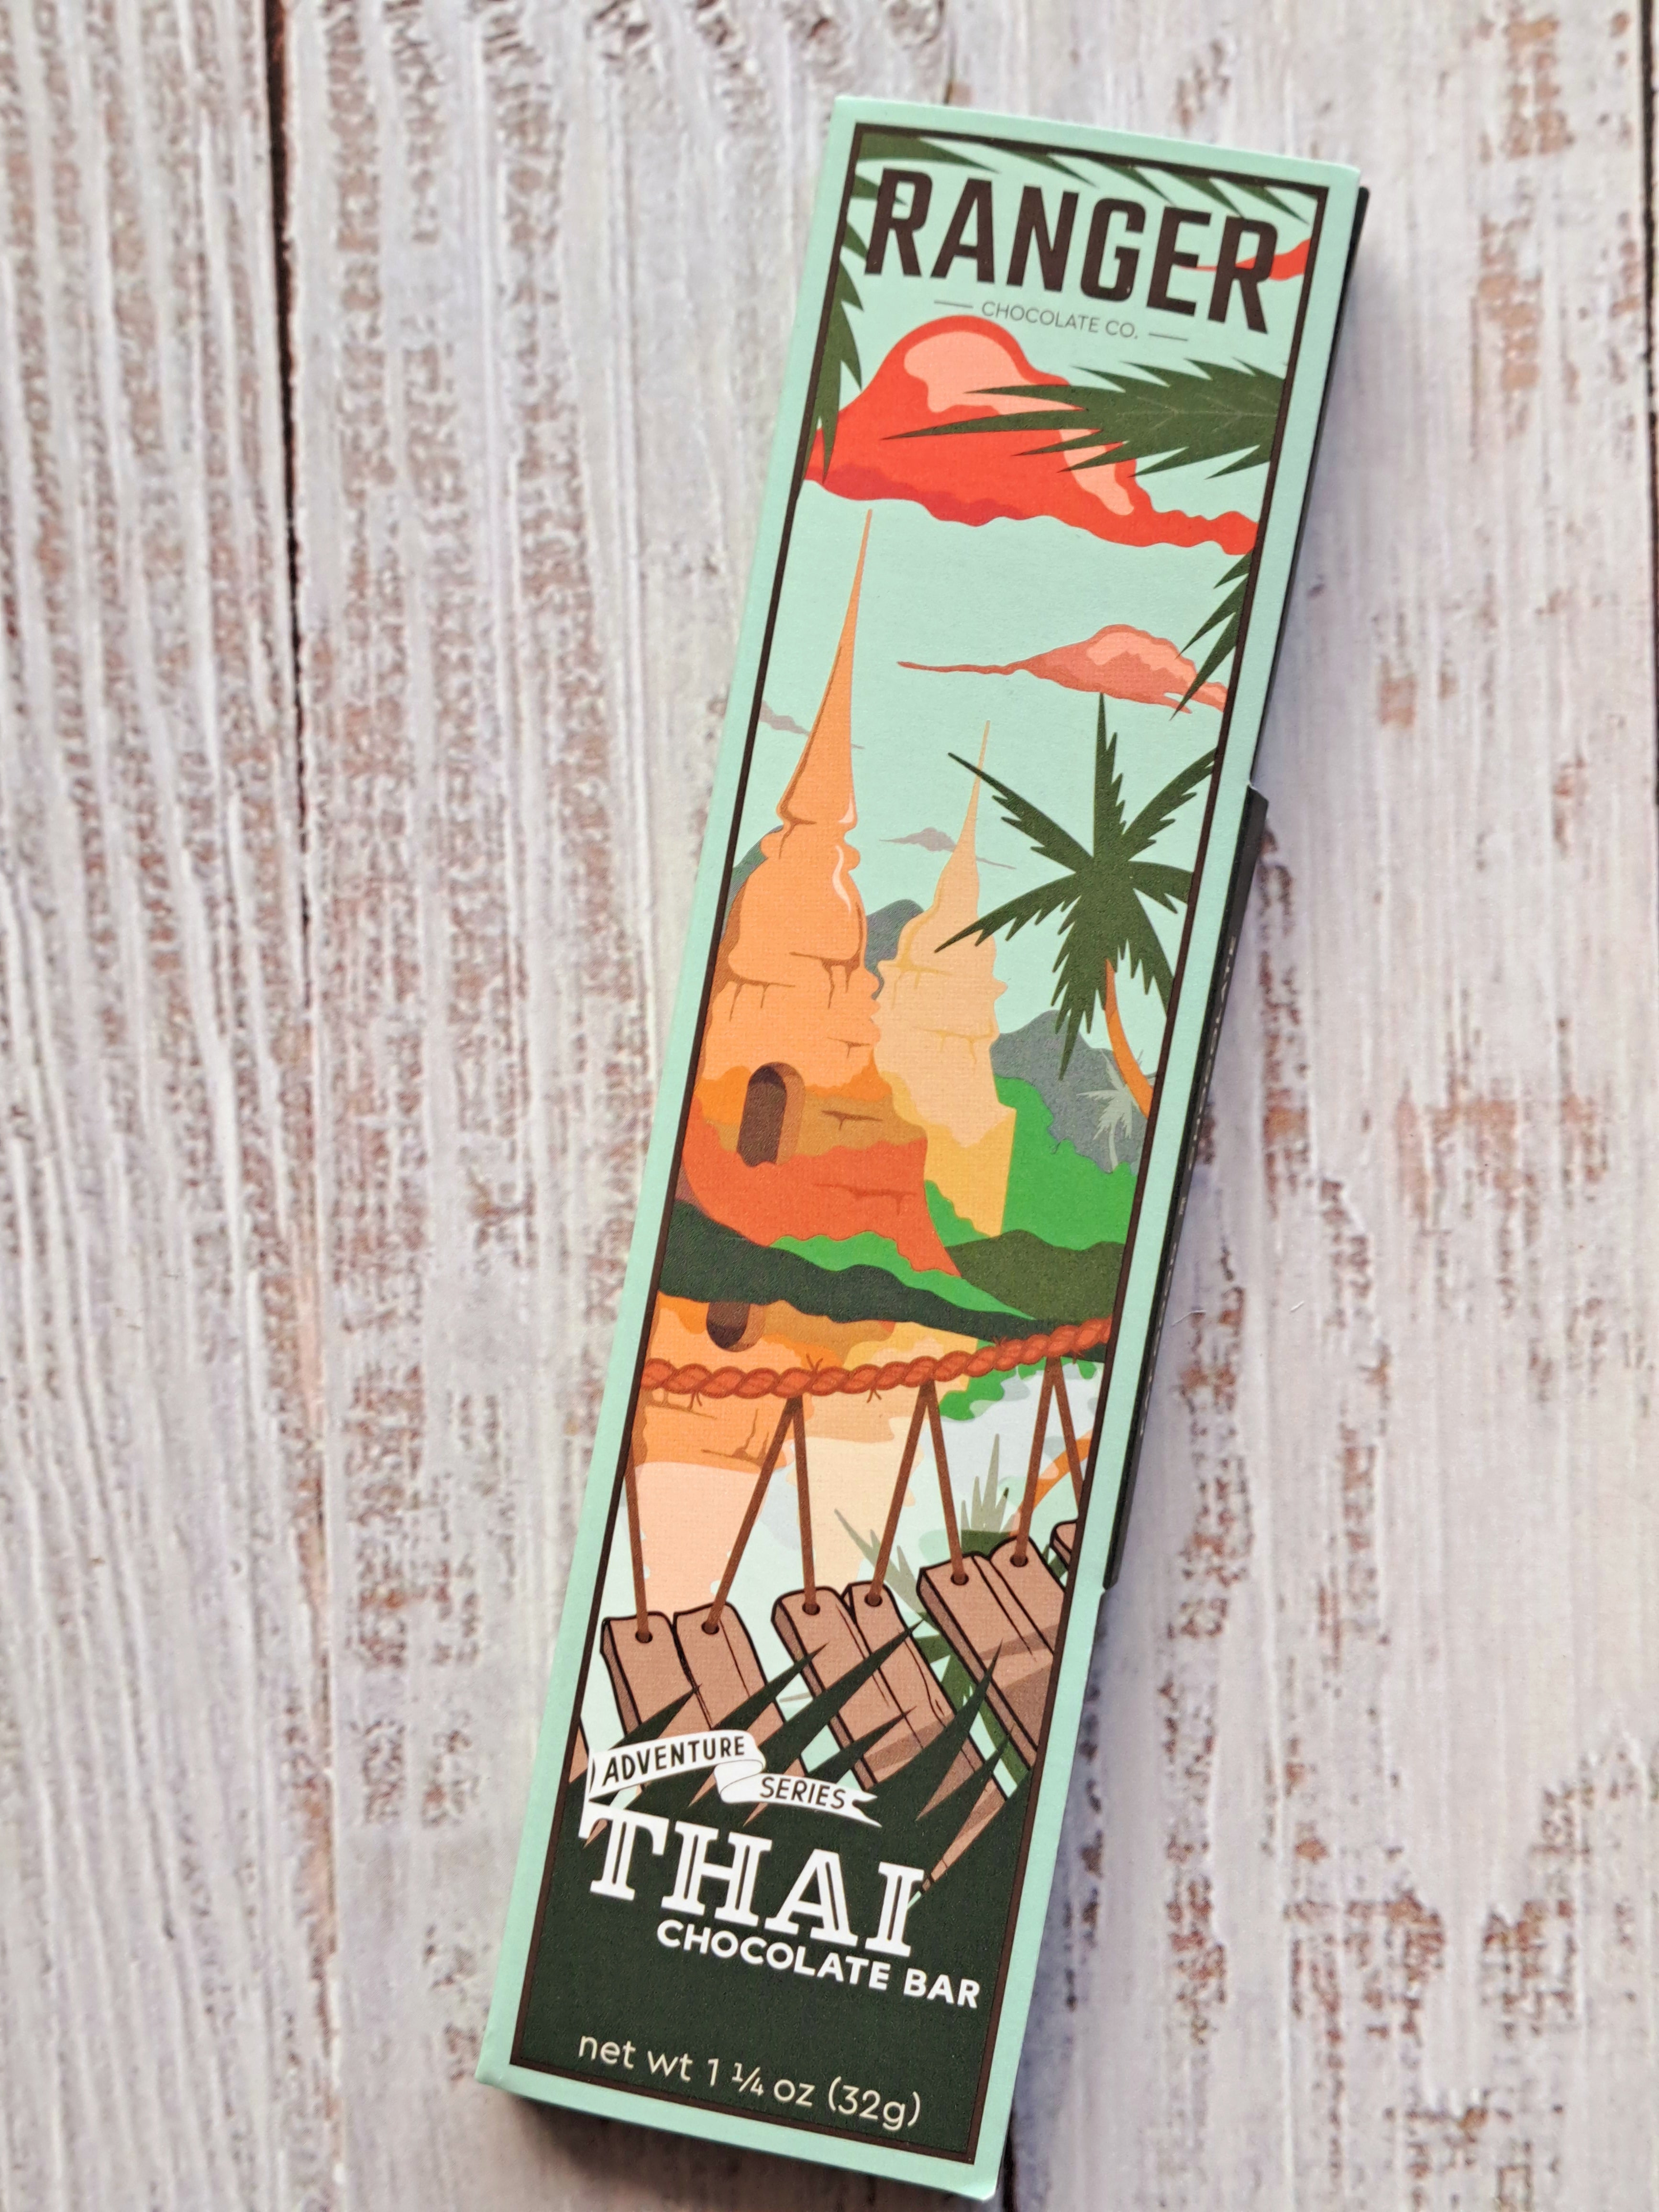 Thai Flavour